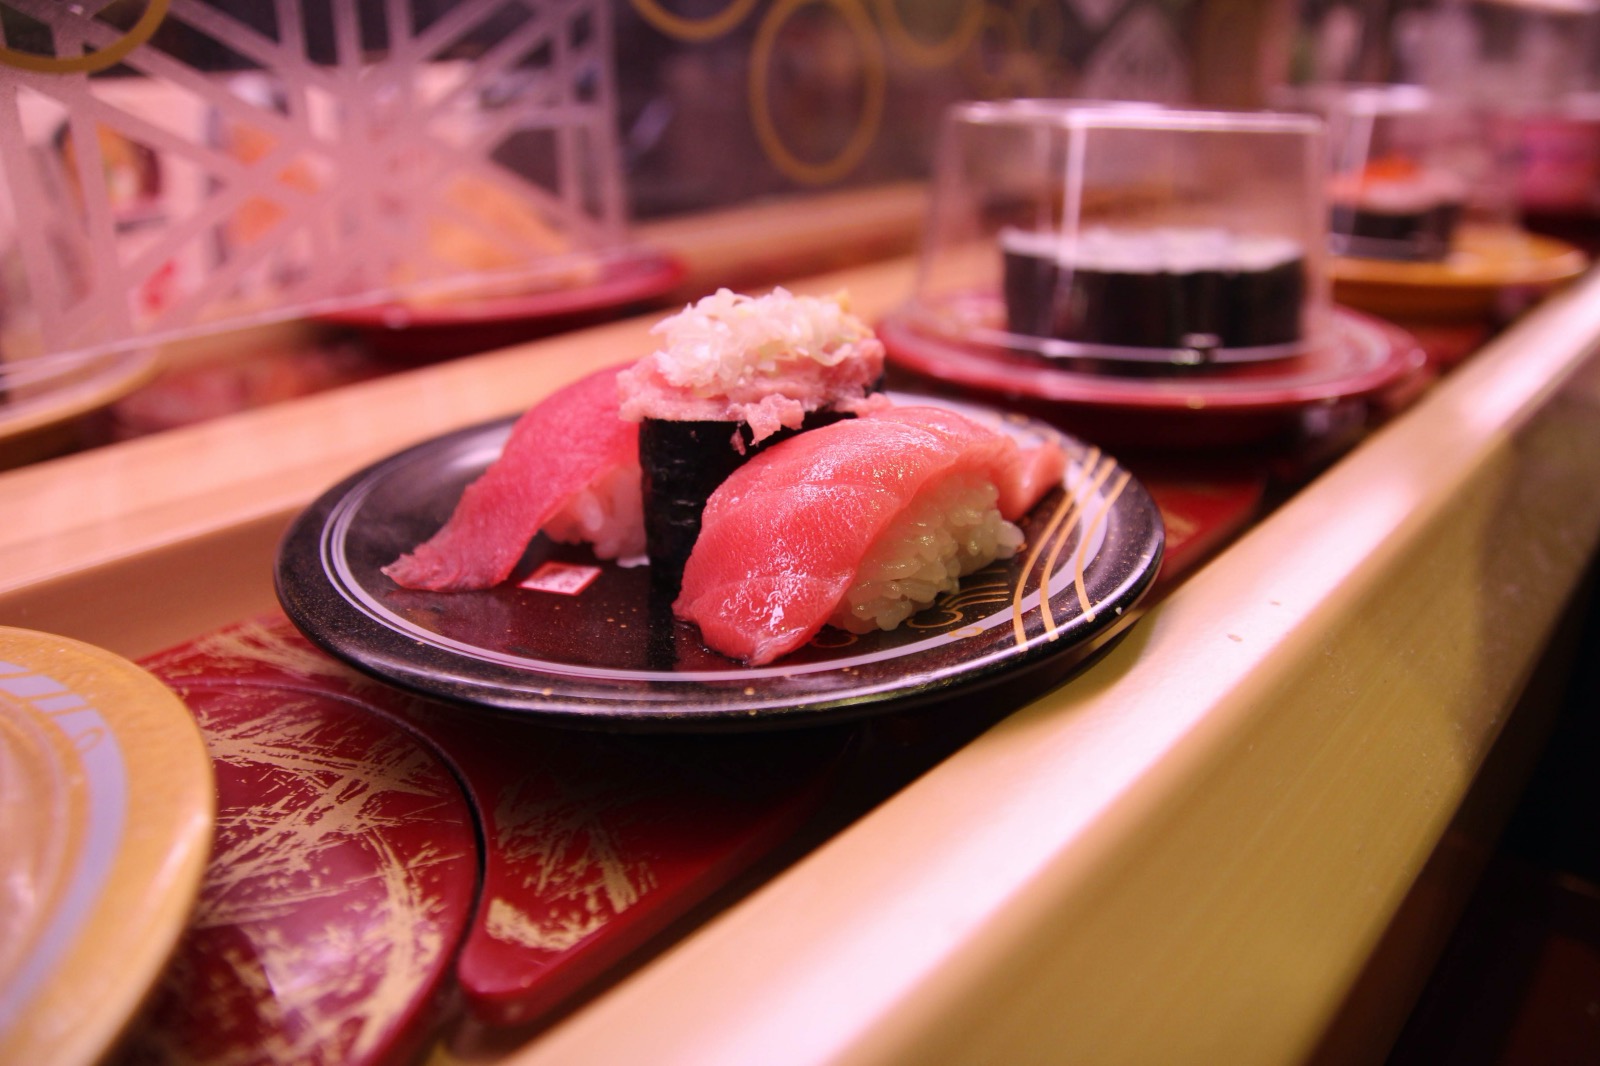 Nicht mehr zeitgemäss: Die endlose Sushi-Auswahl auf dem Förderband.